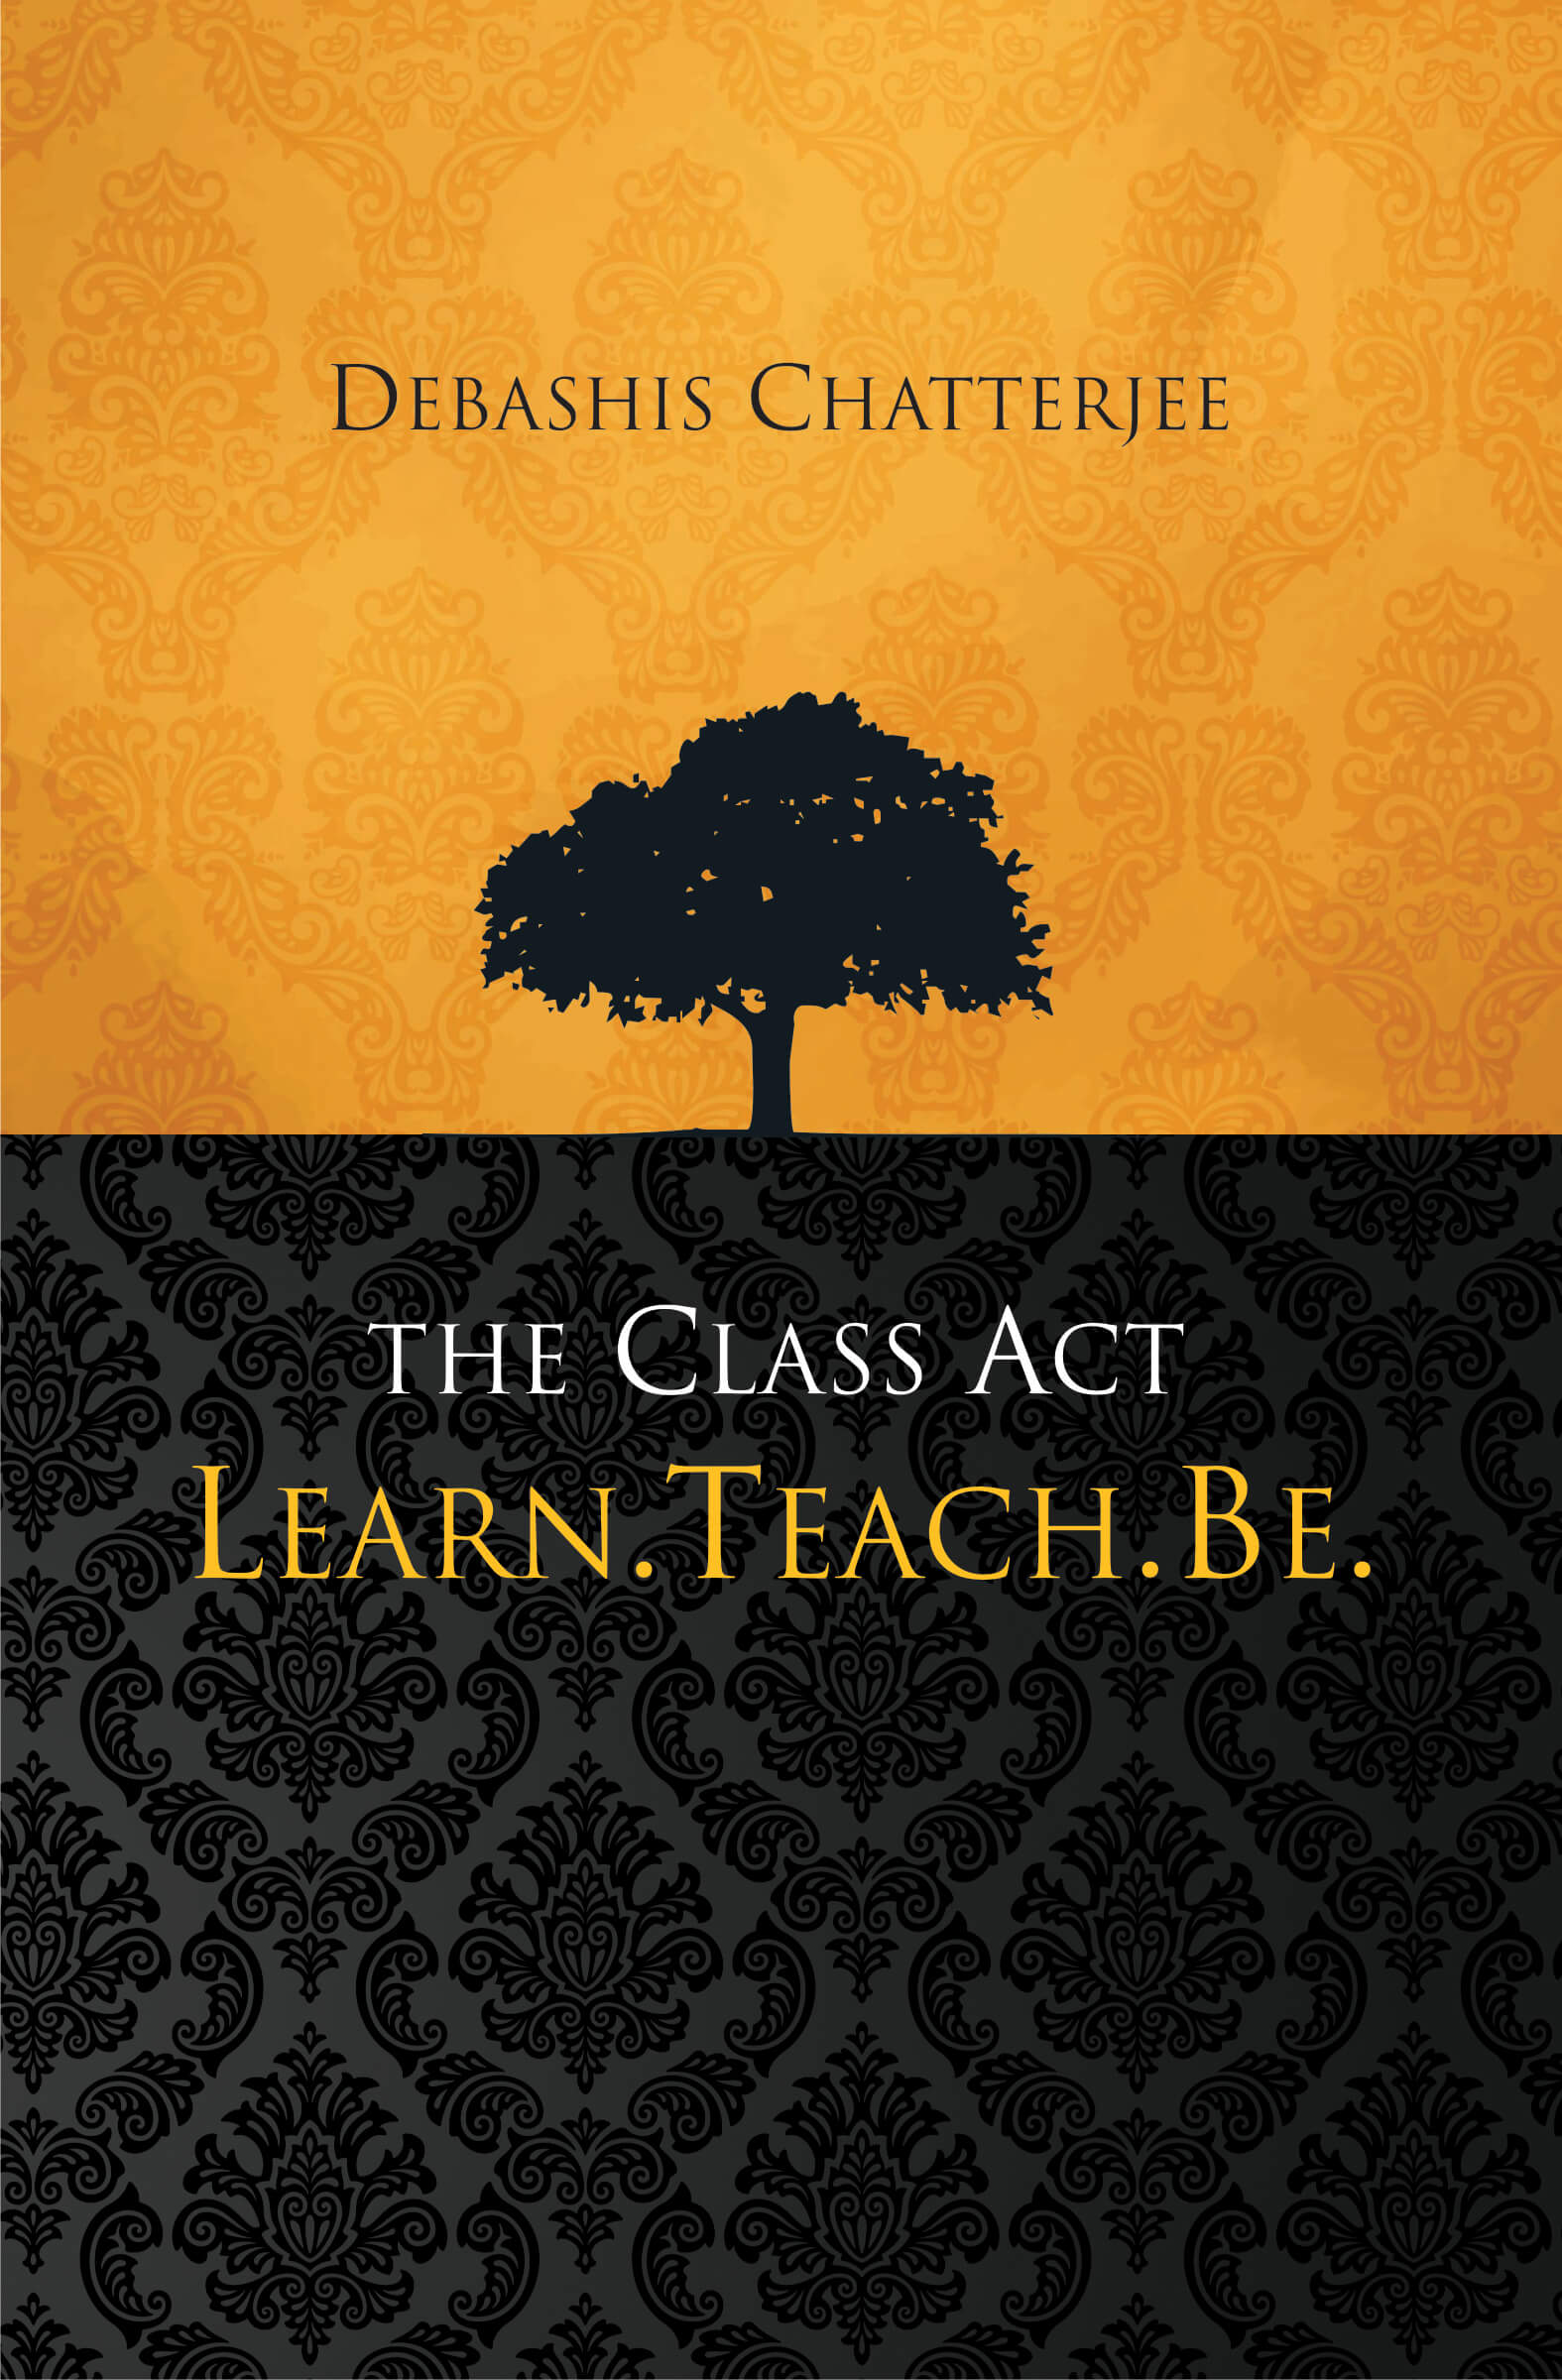 The Class Act: Learn, Teach, Be